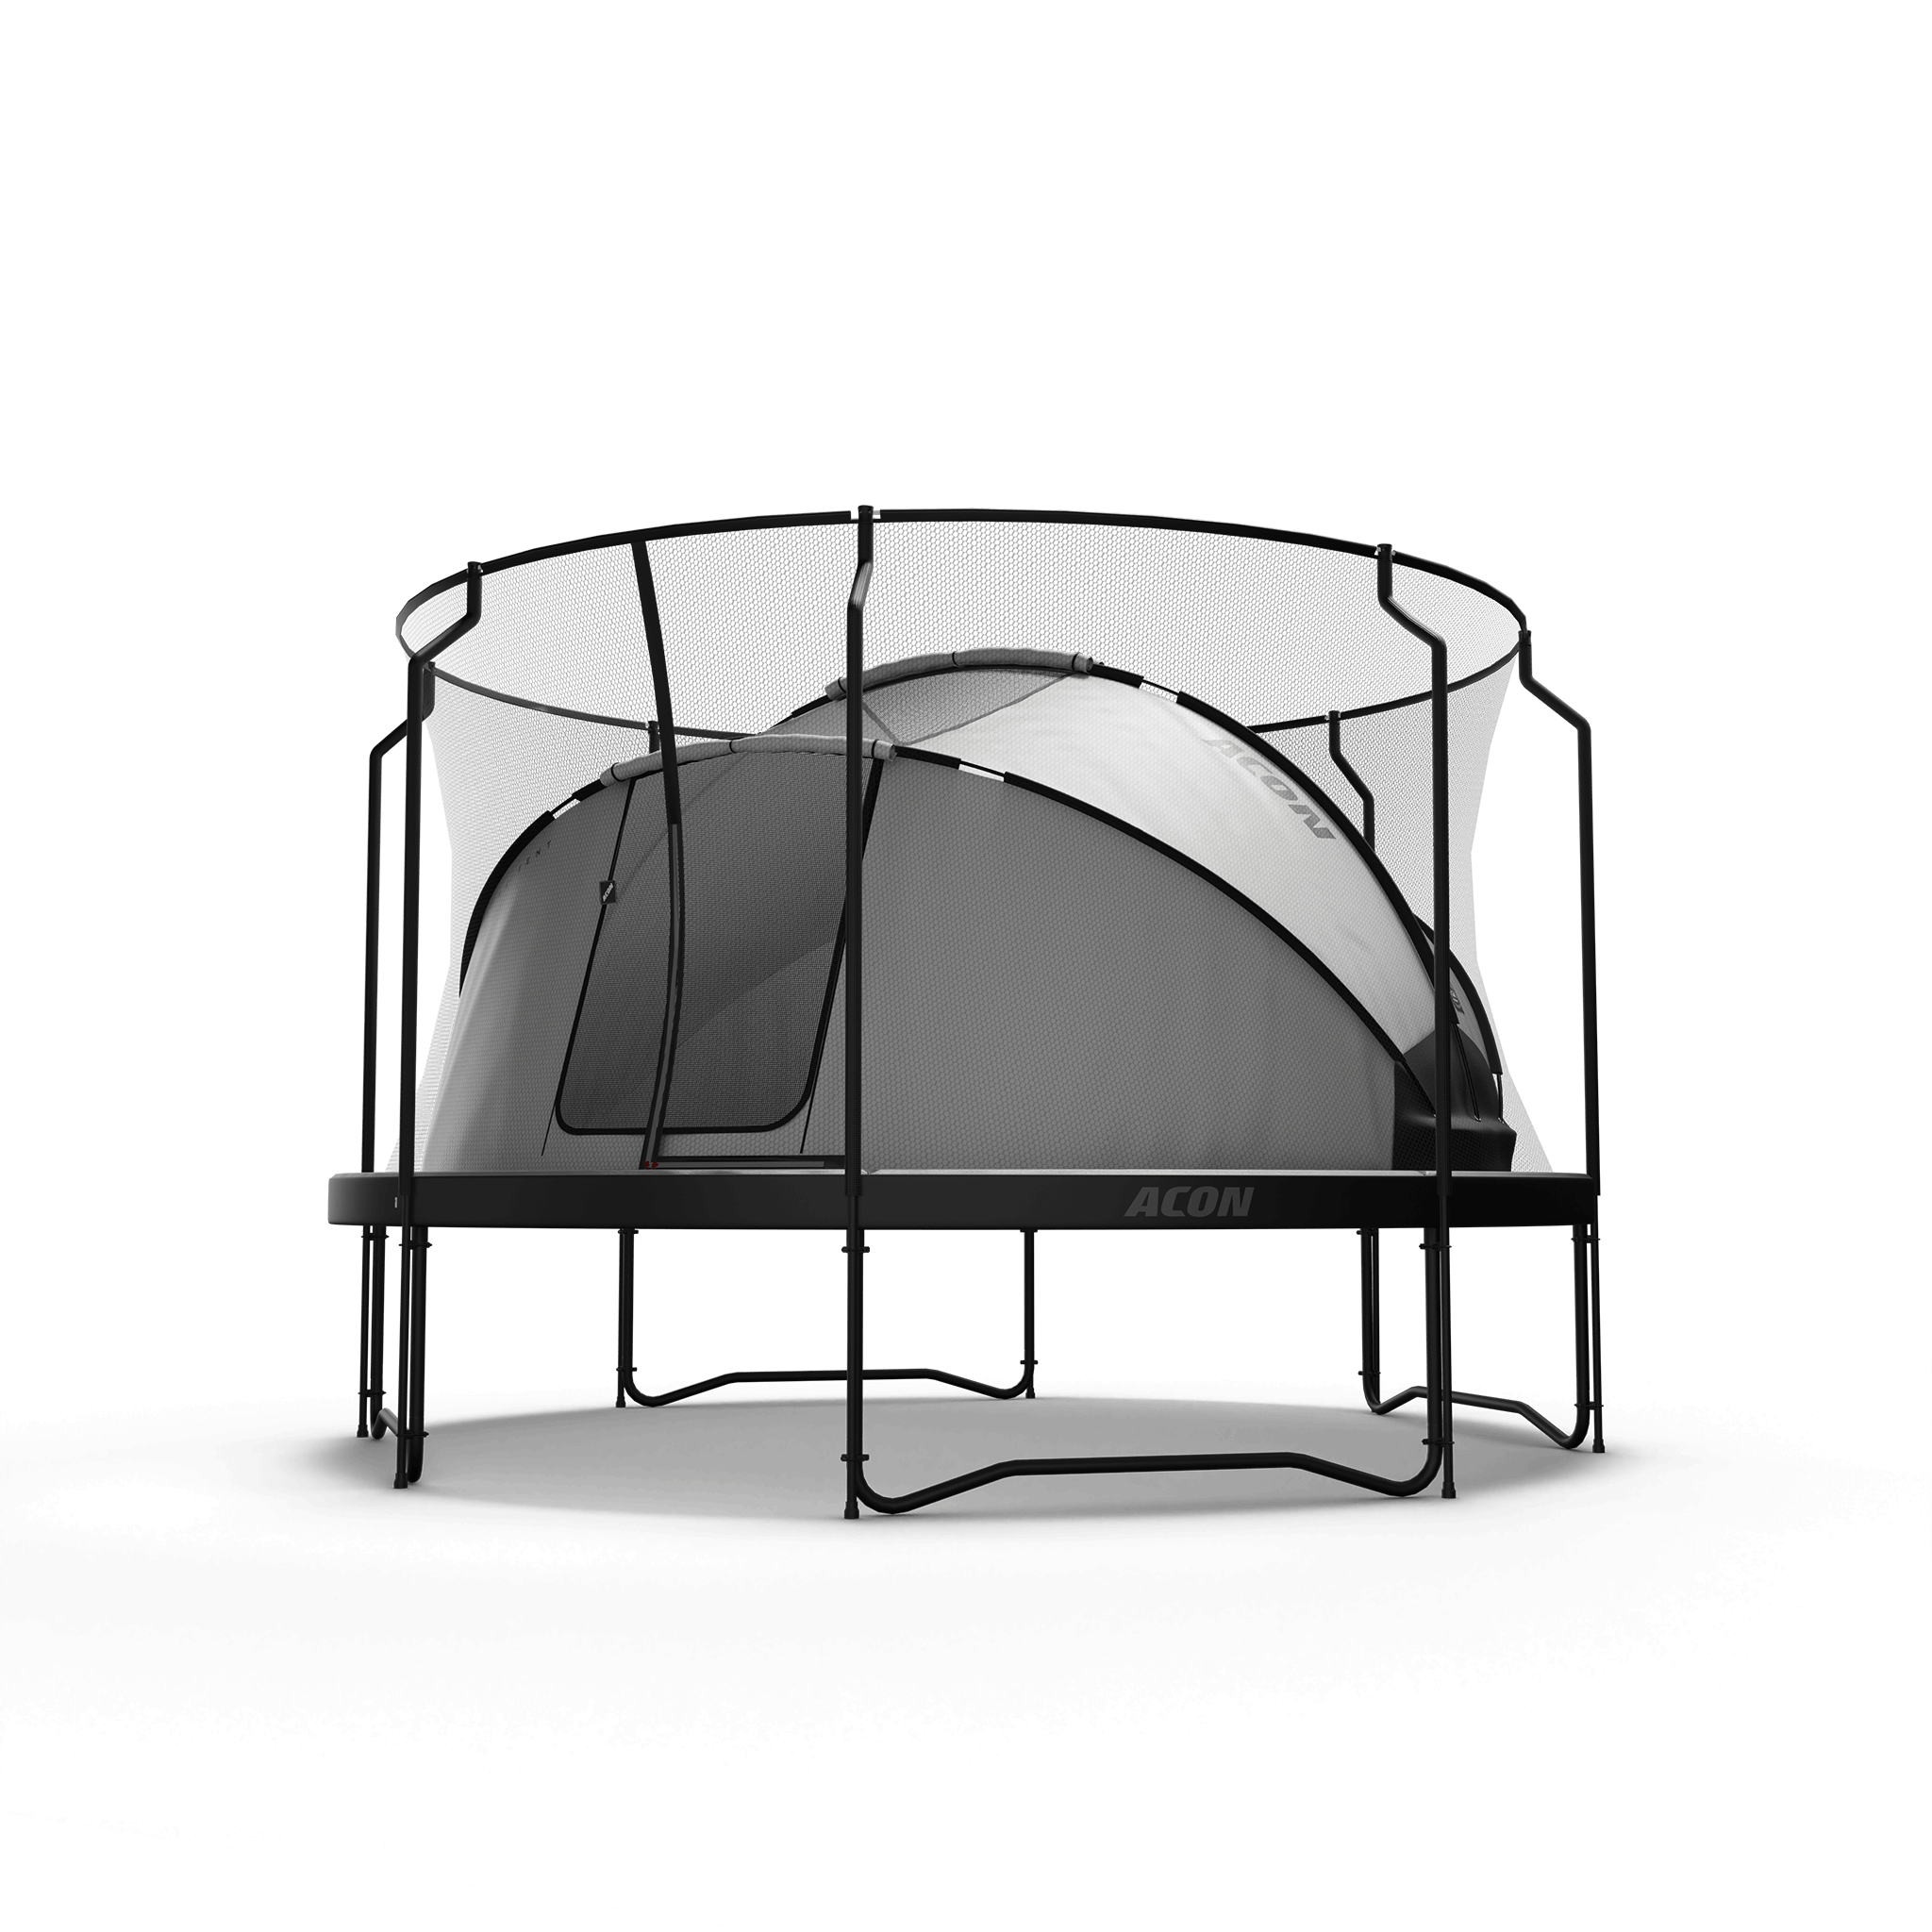 Acon trampoline tent with premium exterrior safety net doors open